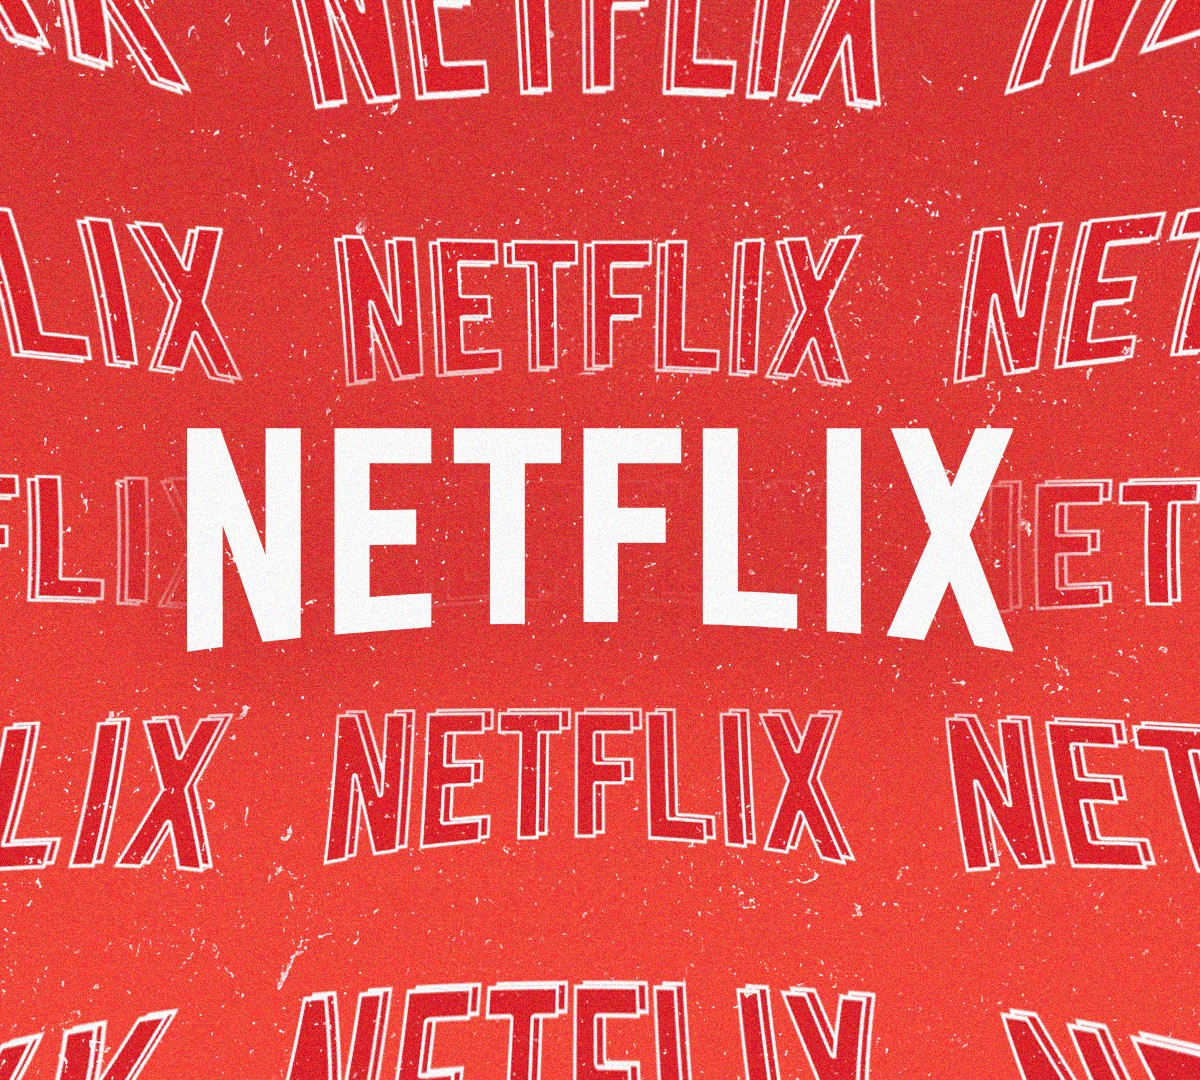 Cancelamento e multas: O que acontece se parar a assinatura da Netflix?